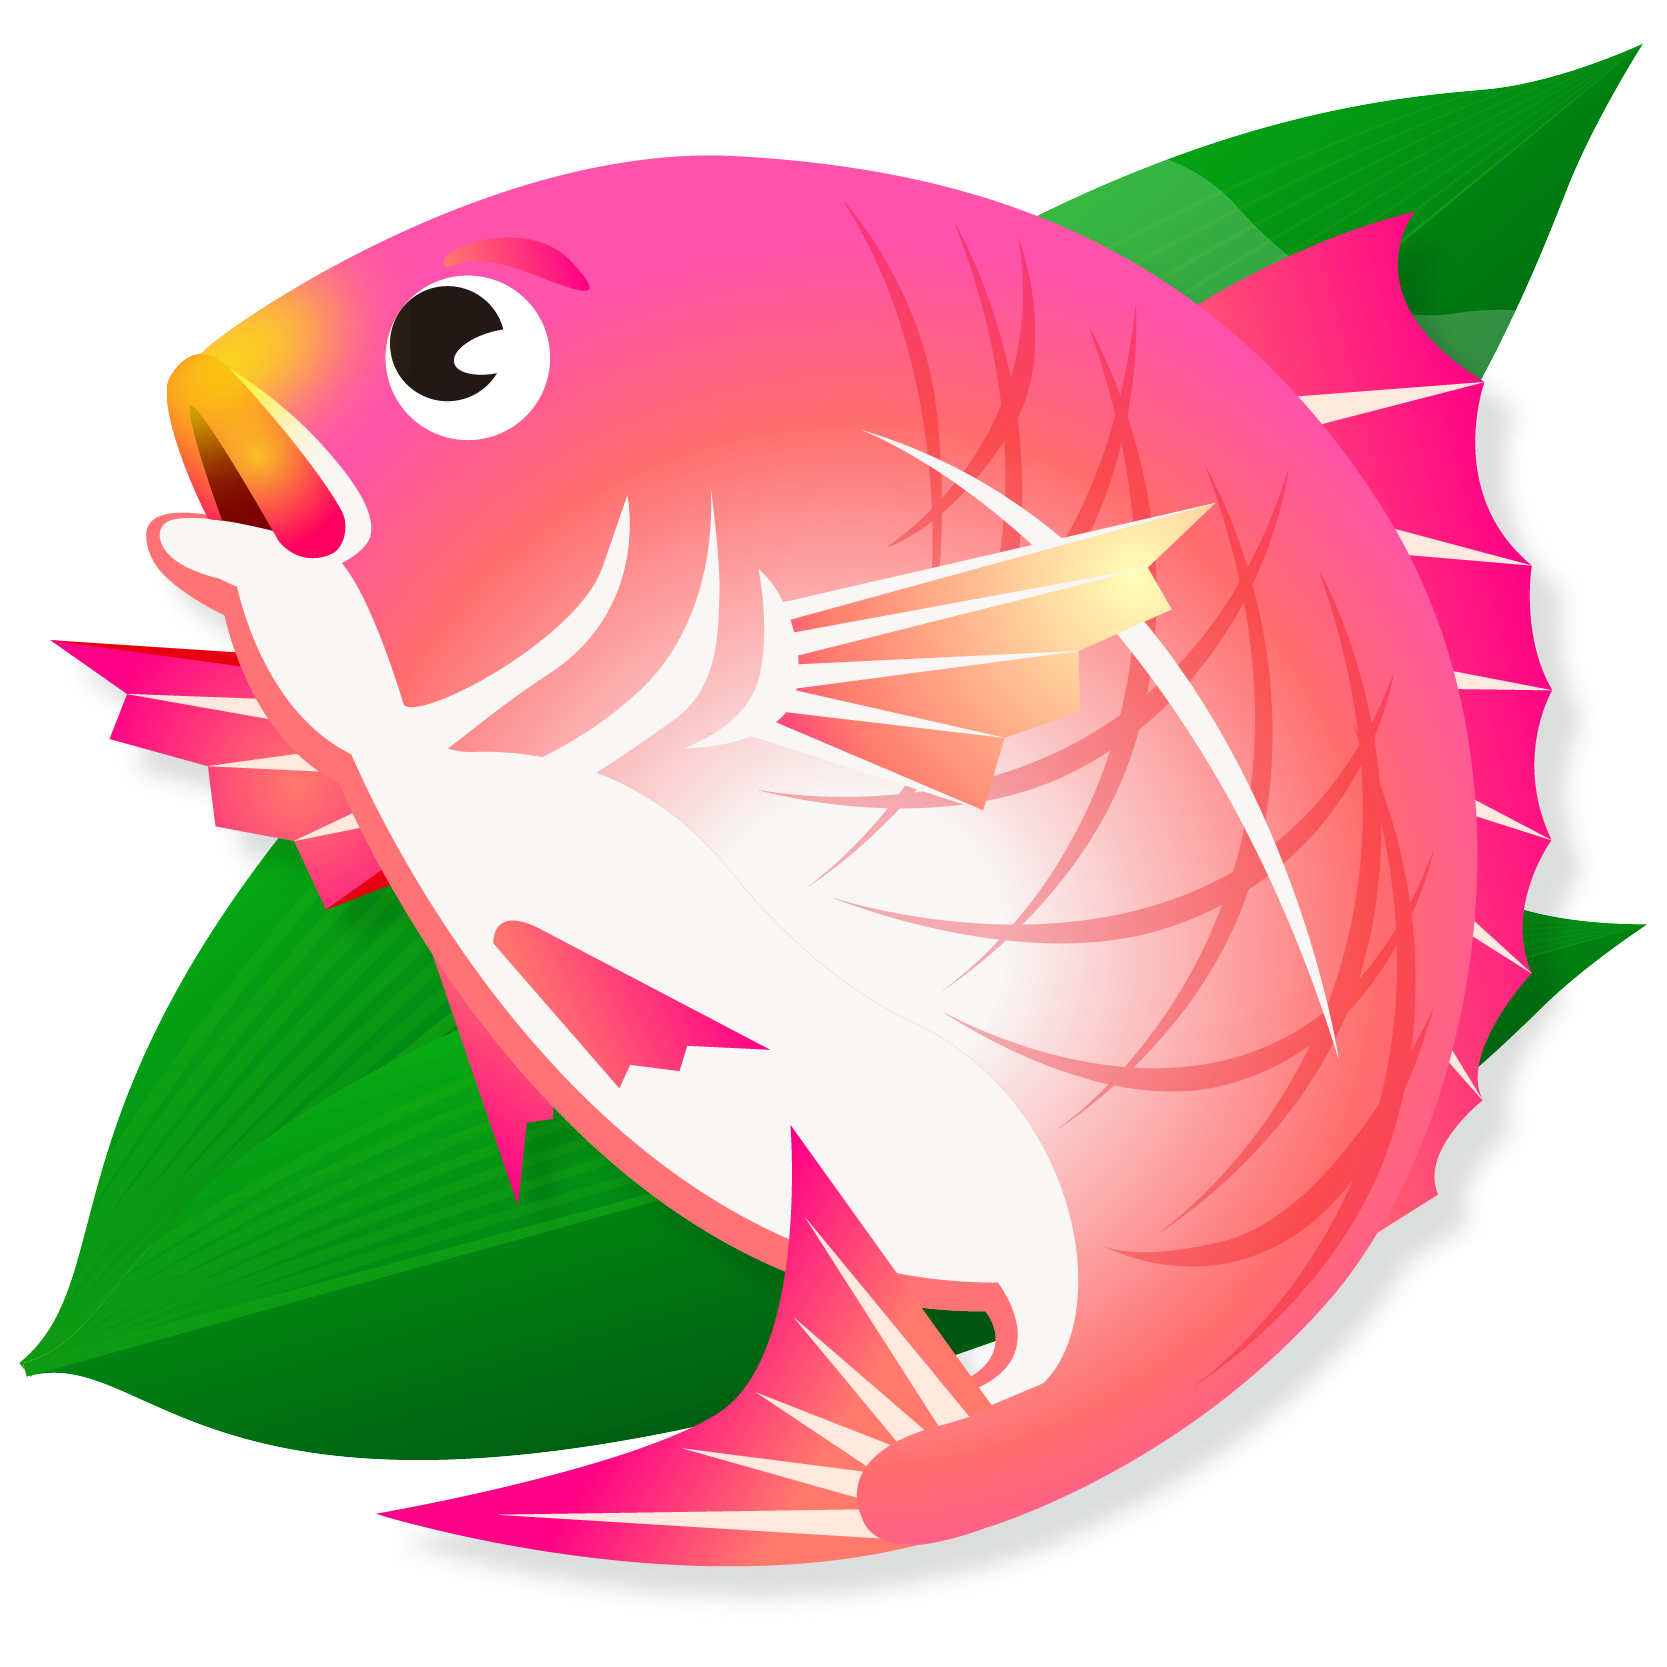 商用フリー 無料イラスト 縁起物 桜鯛 さくらだい Sakuradai003 商用ok フリー素材集 ナイスなイラスト